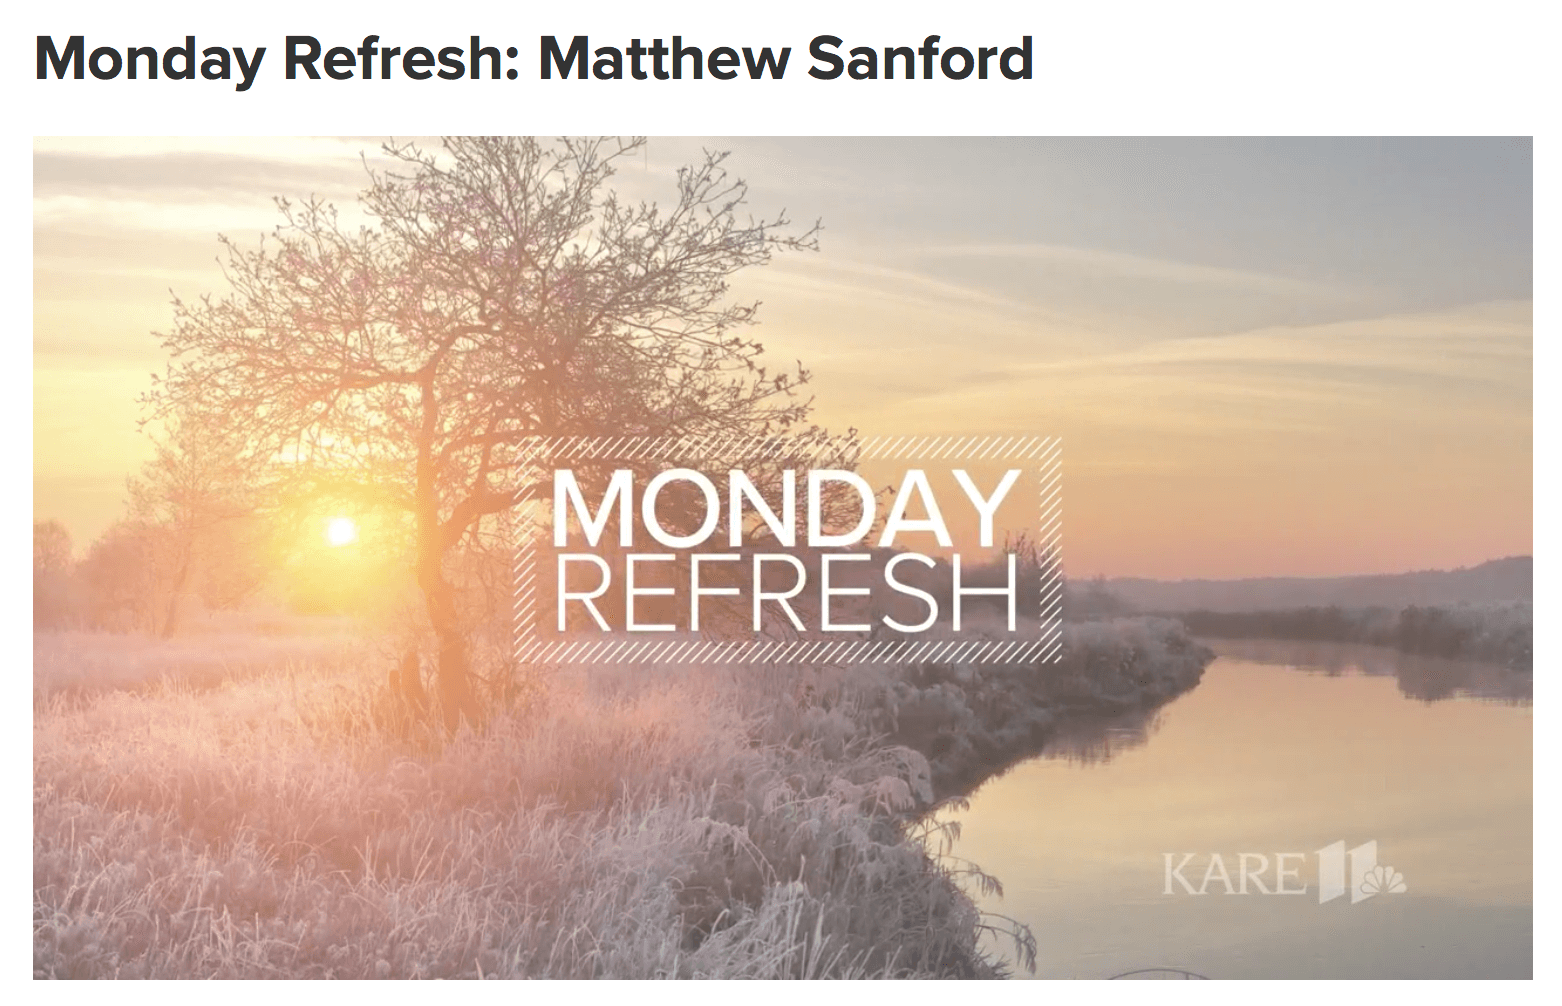 KARE11: Monday Refresh with Matthew Sanford